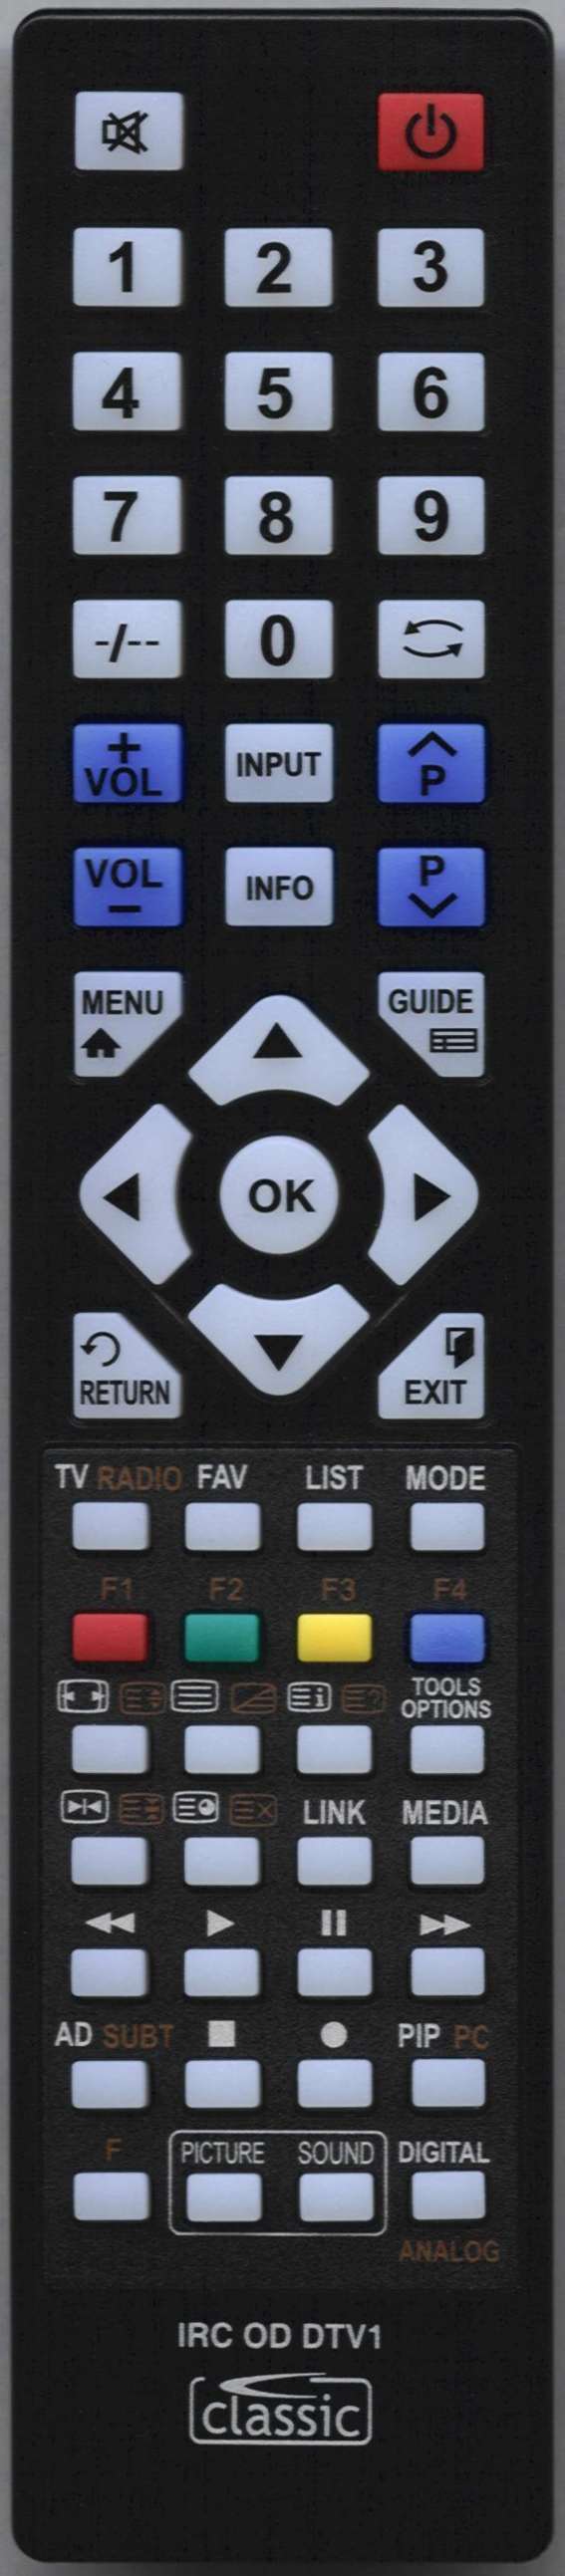 ORION 845-051-03B50 Remote Control